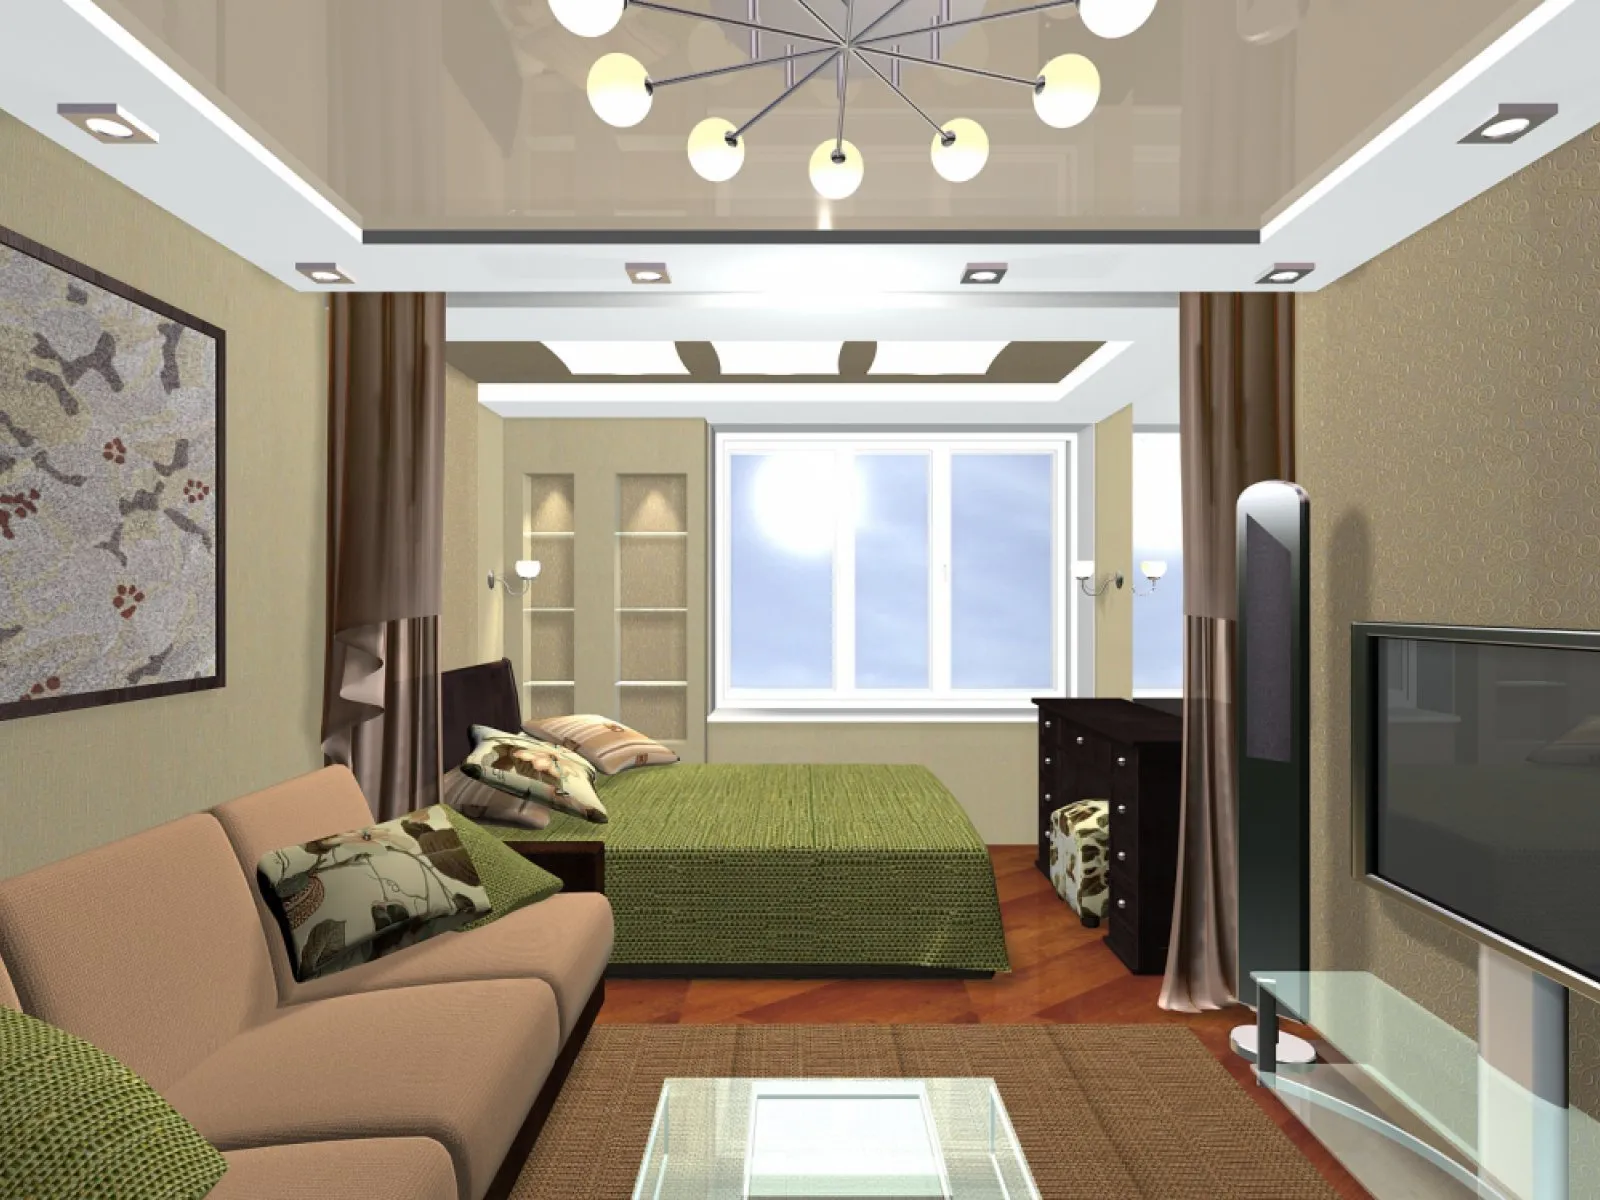 Гостиная и спальня в одной комнате: идеи дизайна интерьера, фото идеи